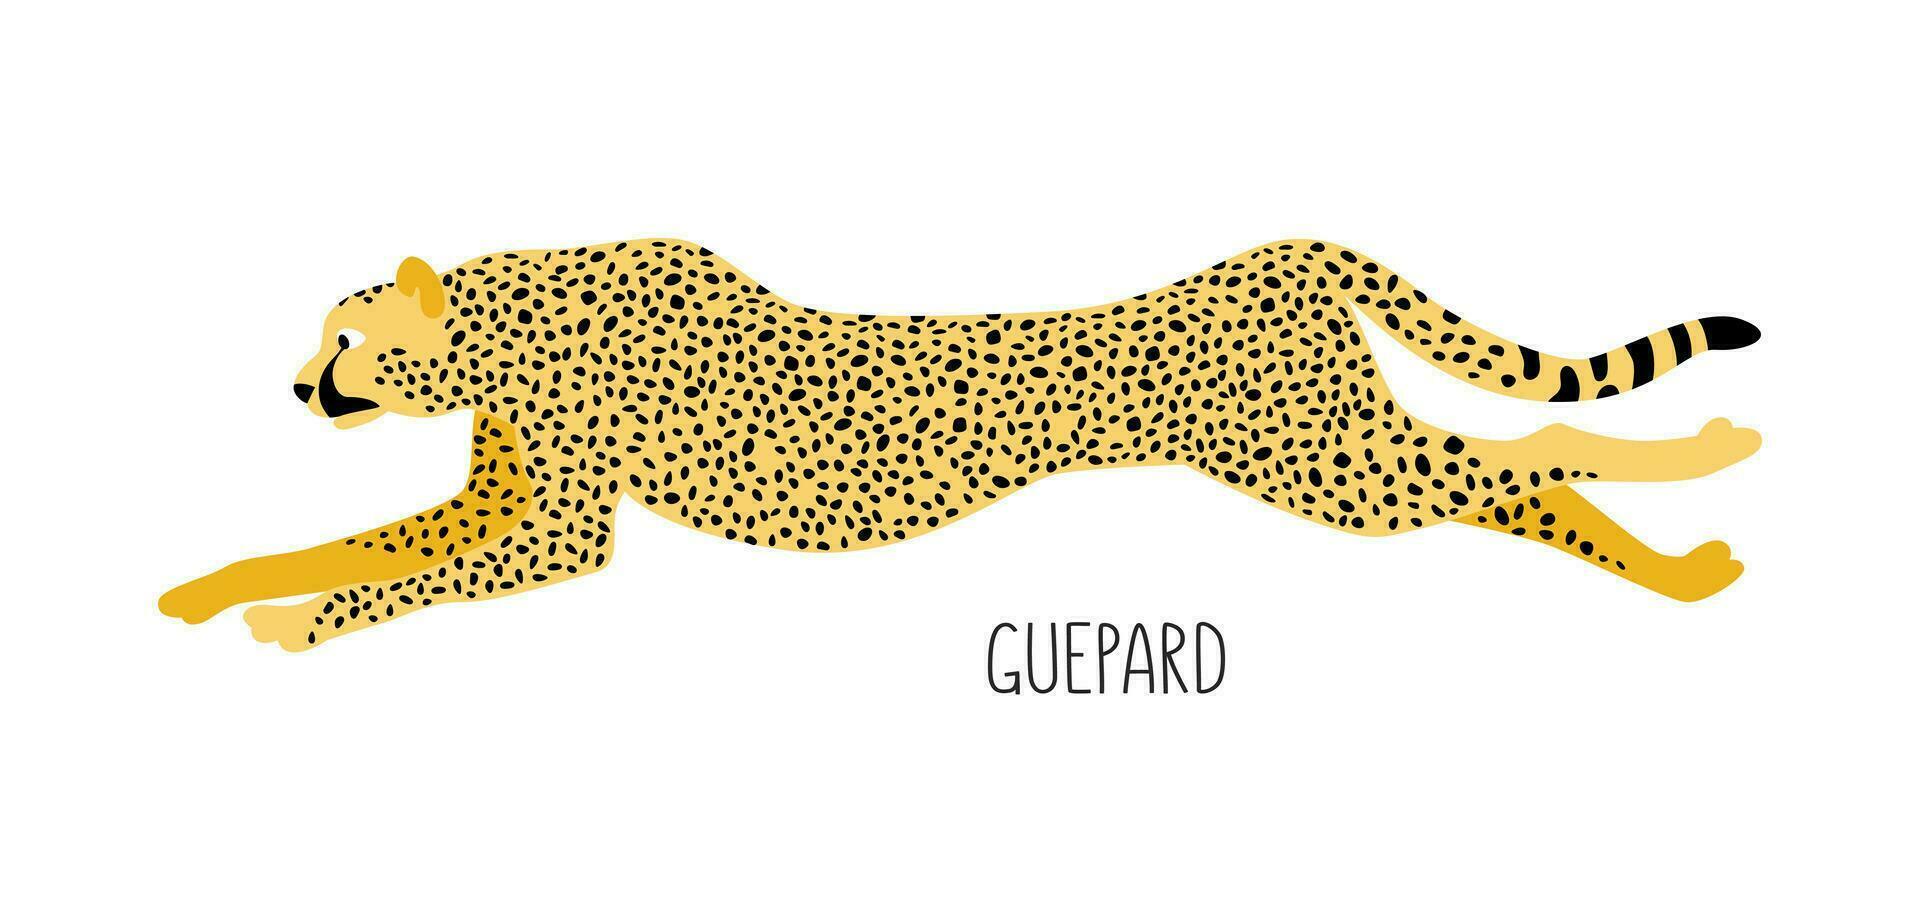 guépard est une sauvage chat. titre. vecteur plat illustration de animal isolé sur blanc Contexte.